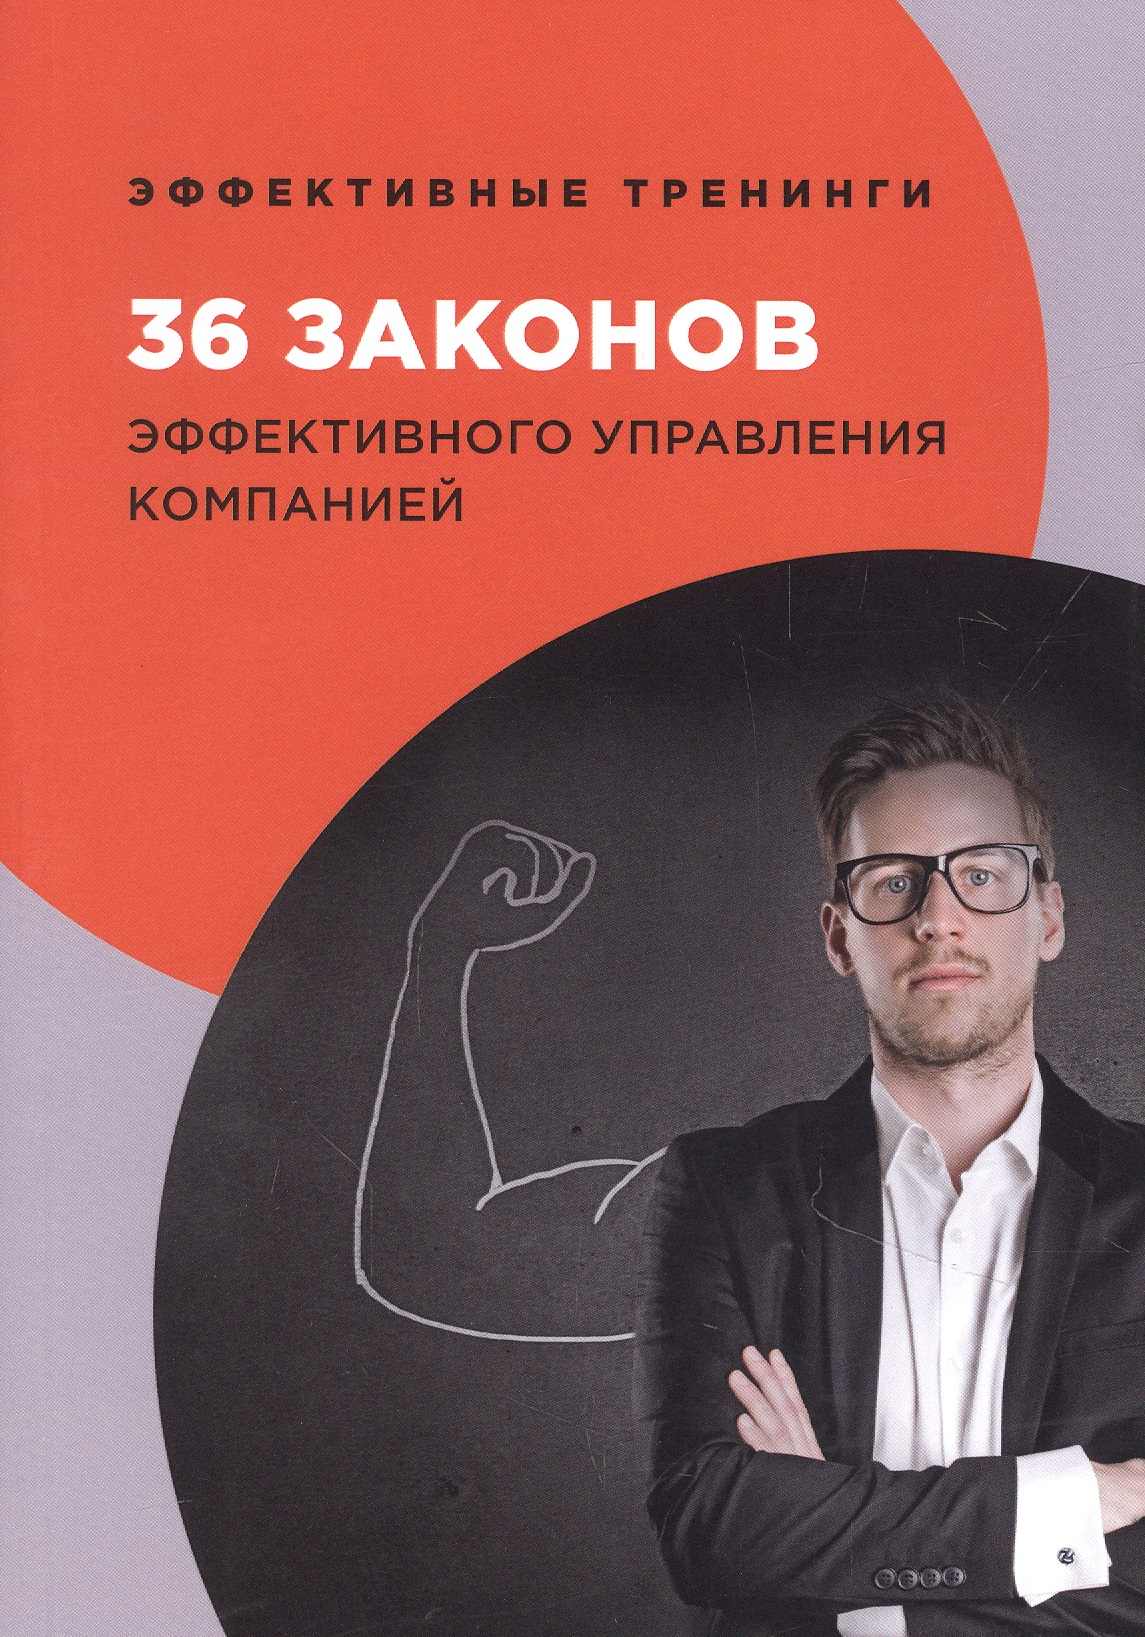 Огарев Георгий Владимирович - 36 законов эффективного управления компанией